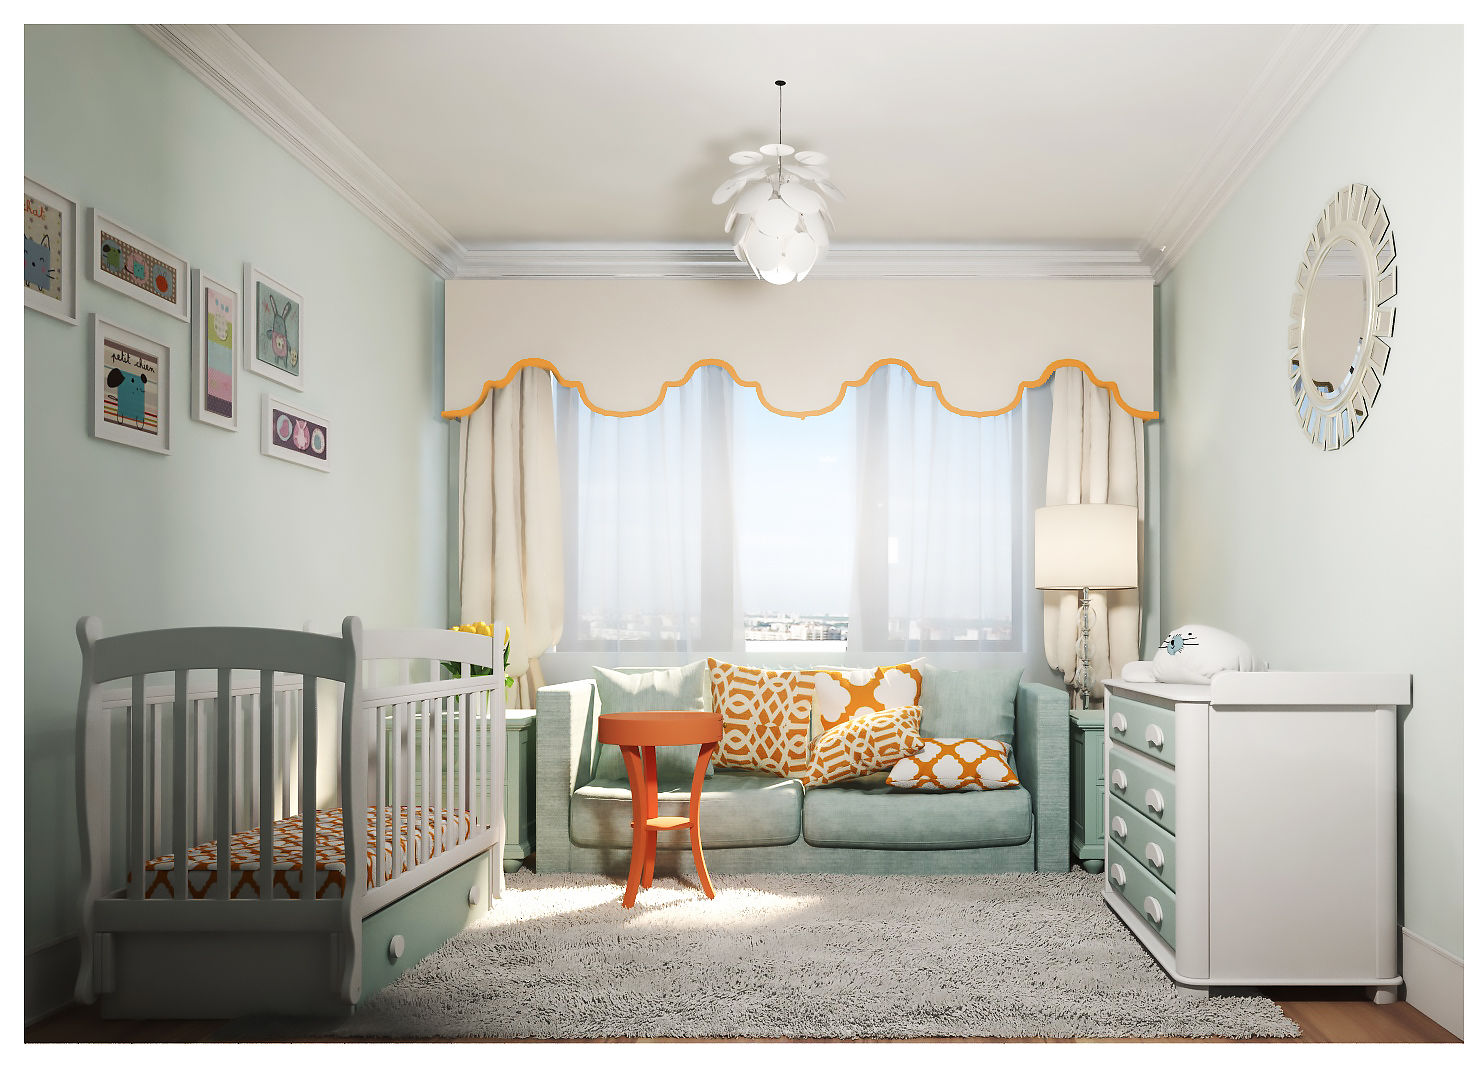 3-bedroom Apartment, Moscow , Alexander Krivov Alexander Krivov Chambre d'enfant classique